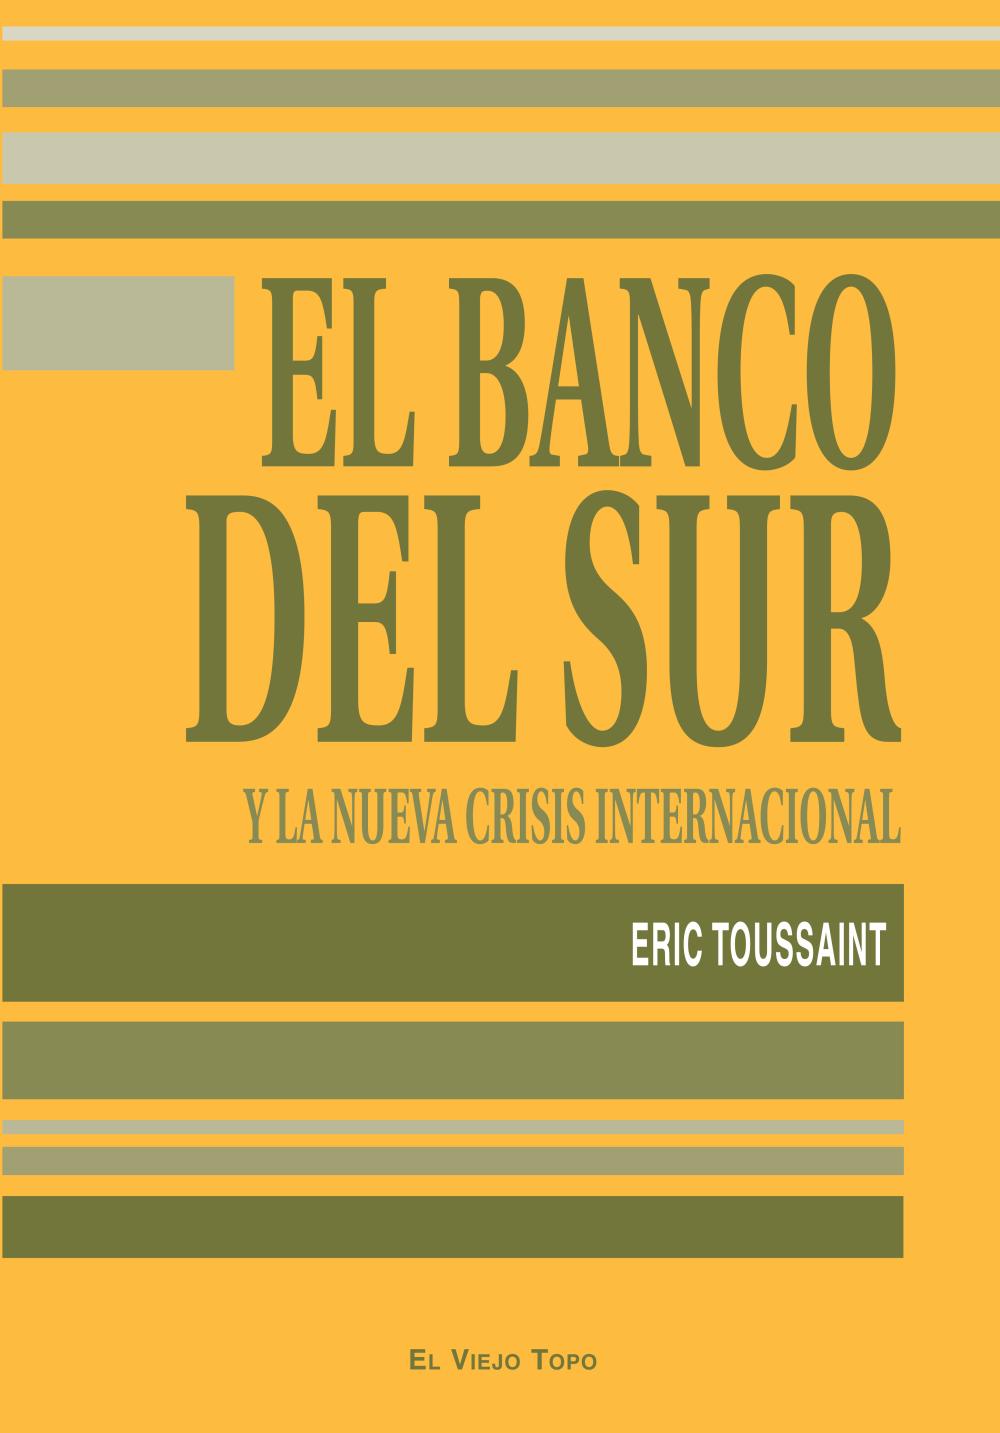 El Banco del Sur y la nueva crisis internacional